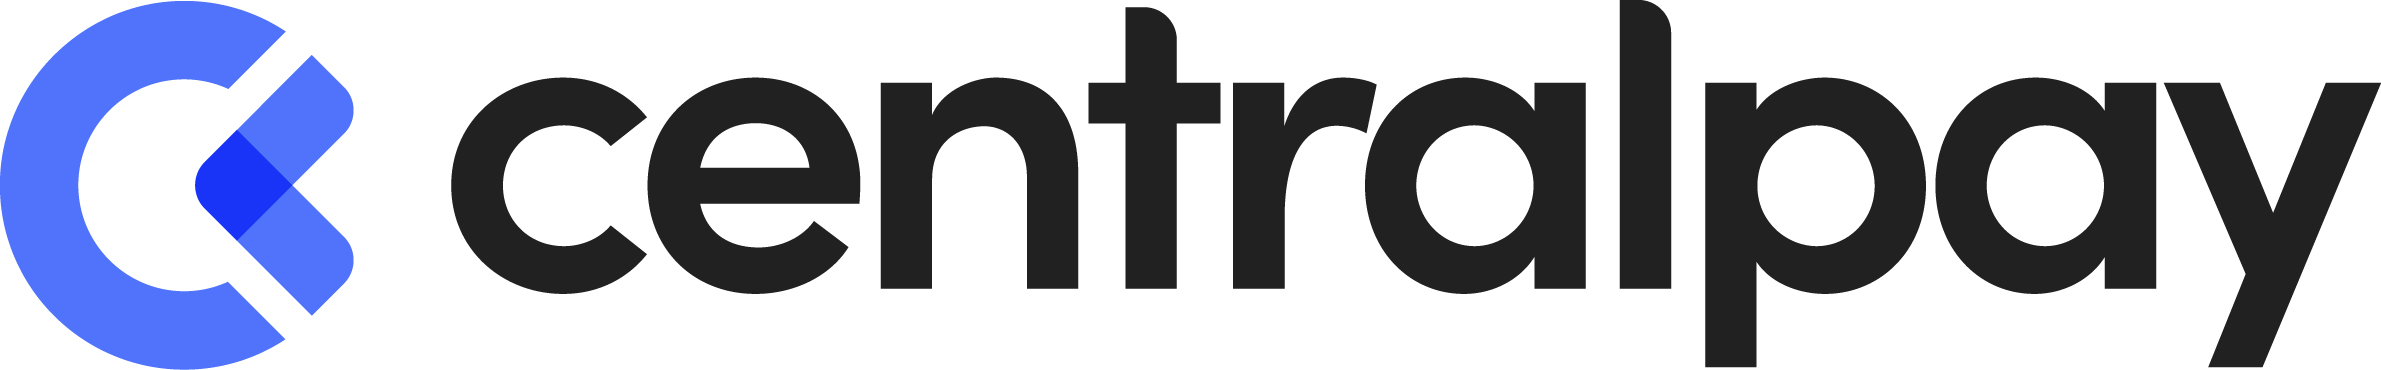 CentralPay - Création de logo - Tours